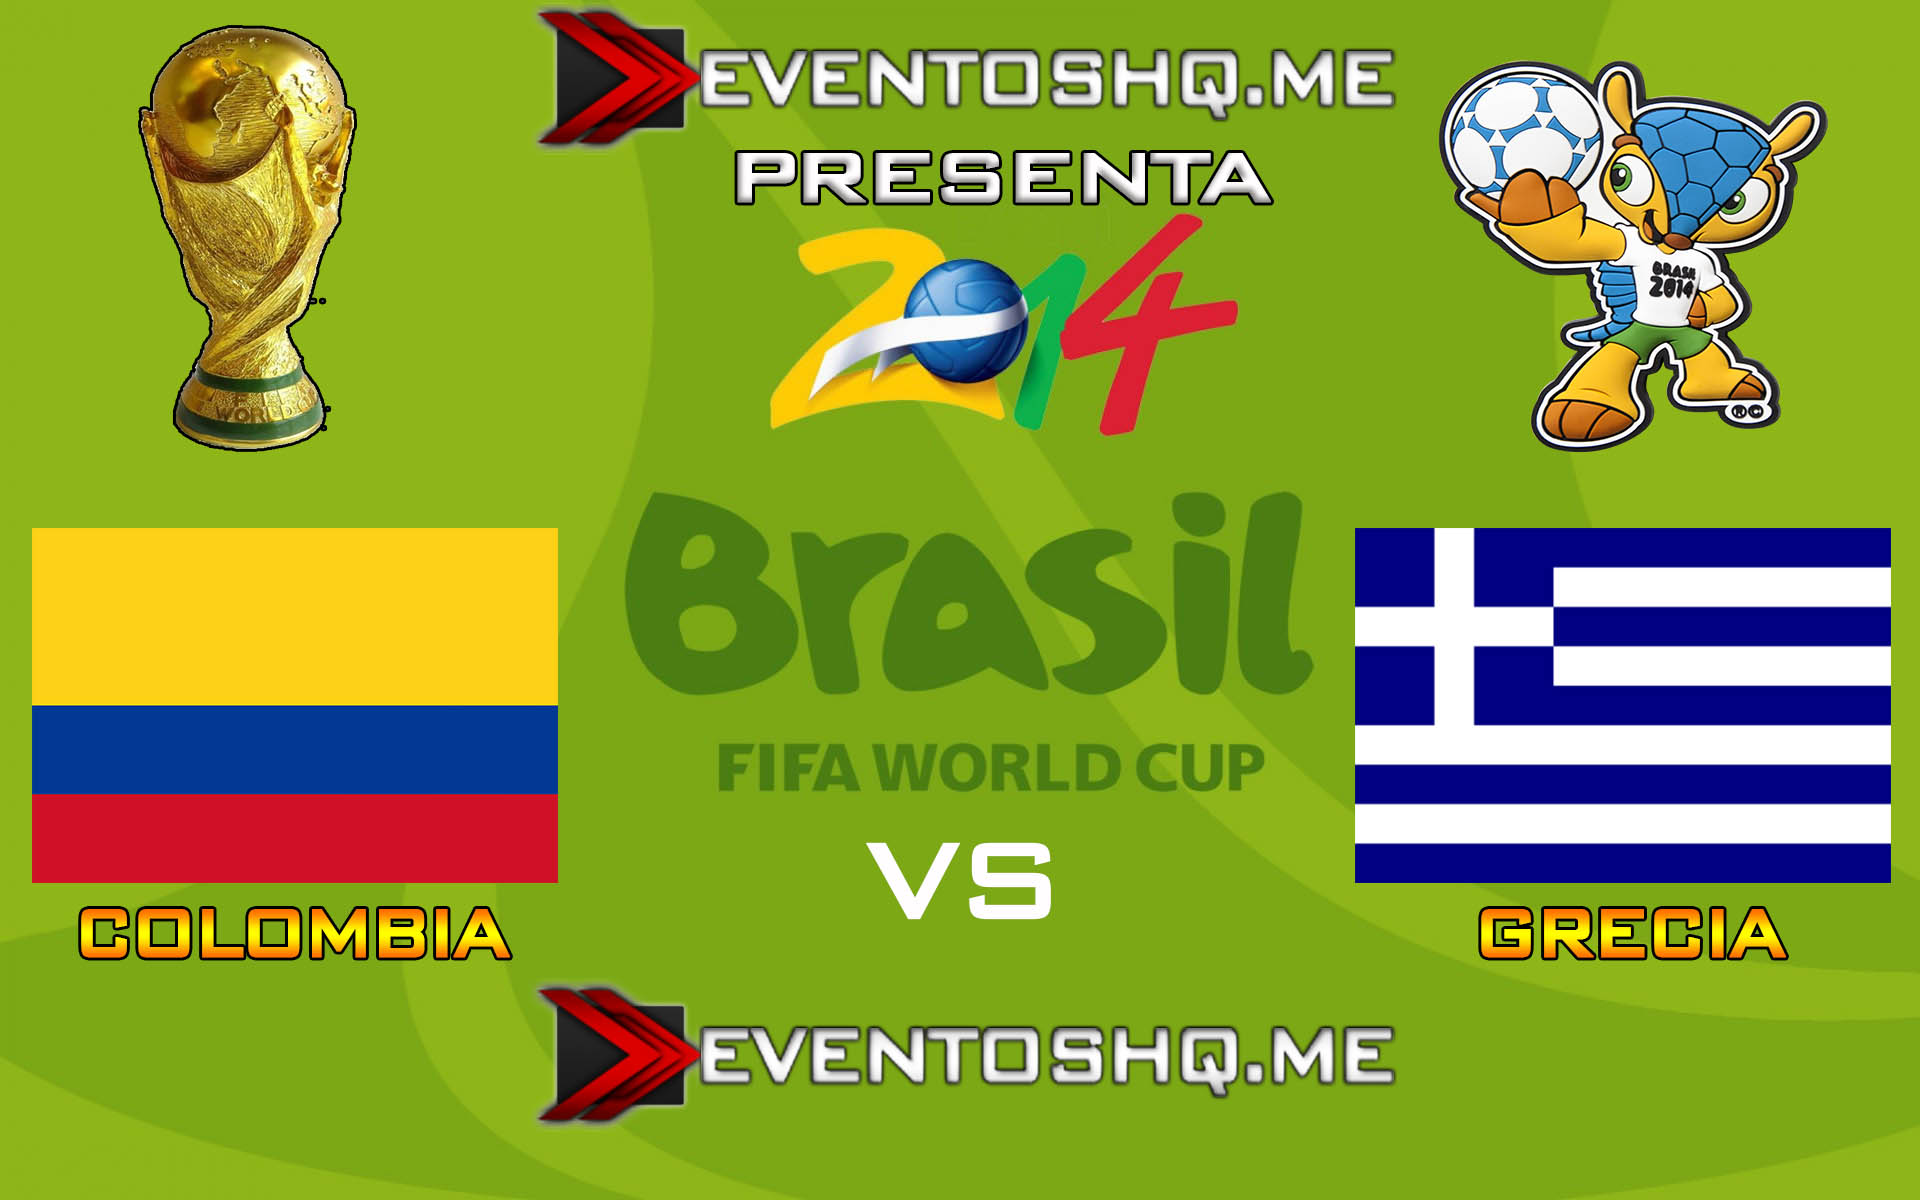 Ver en Vivo Colombia vs Grecia Mundial Brasil 2014 www.eventoshq.me